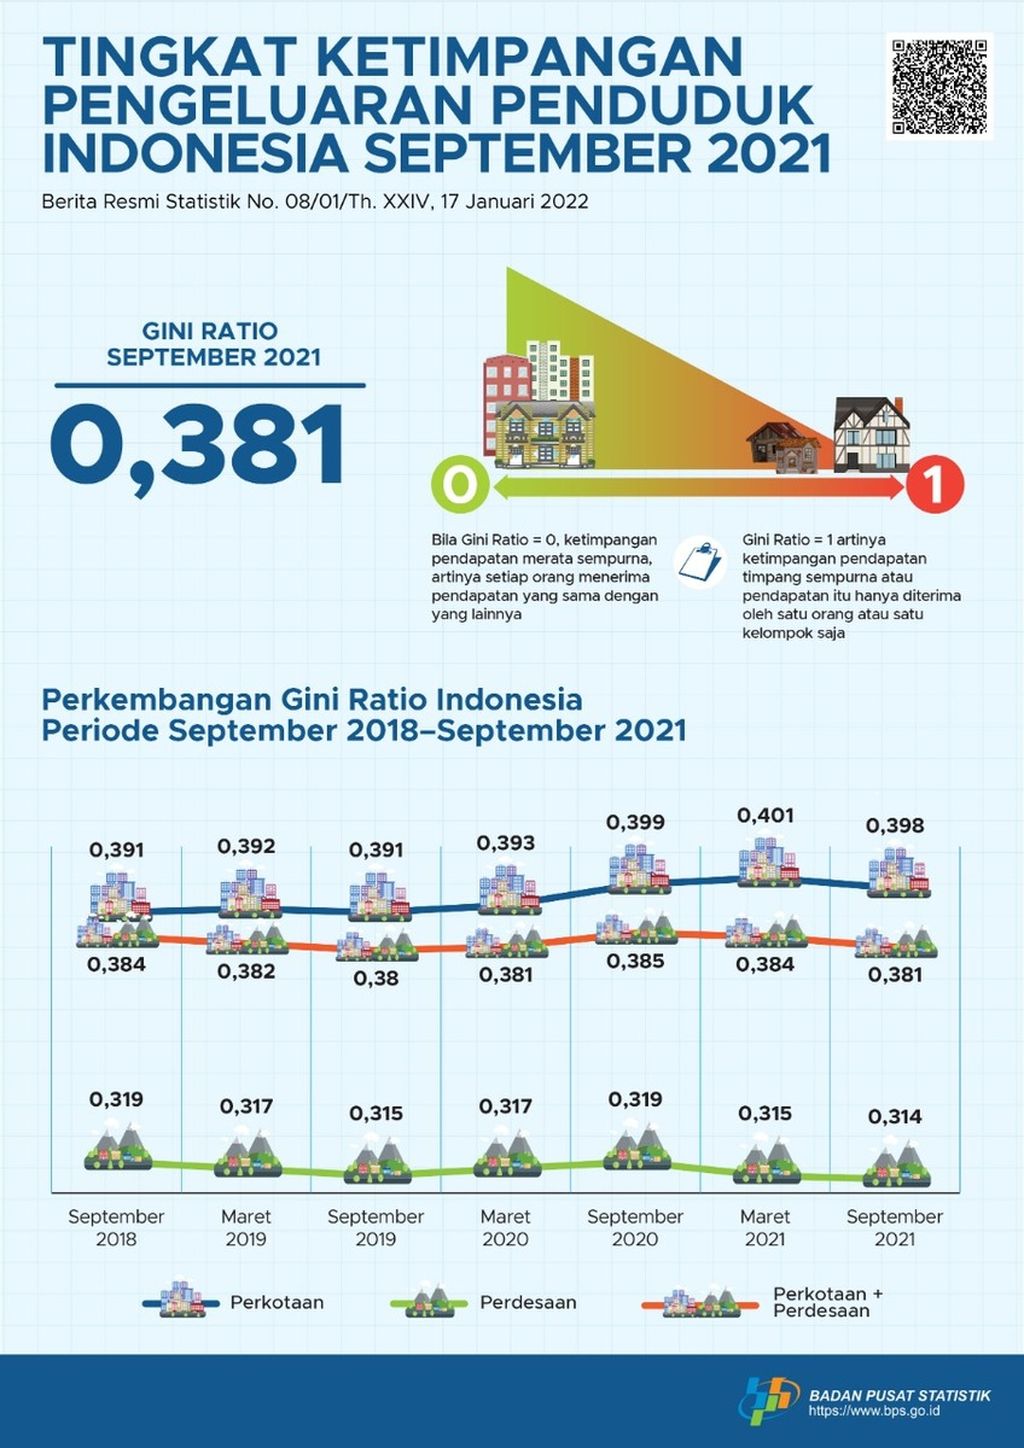 Tingkat Ketimpangan Pengeluaran Penduduk Indonesia